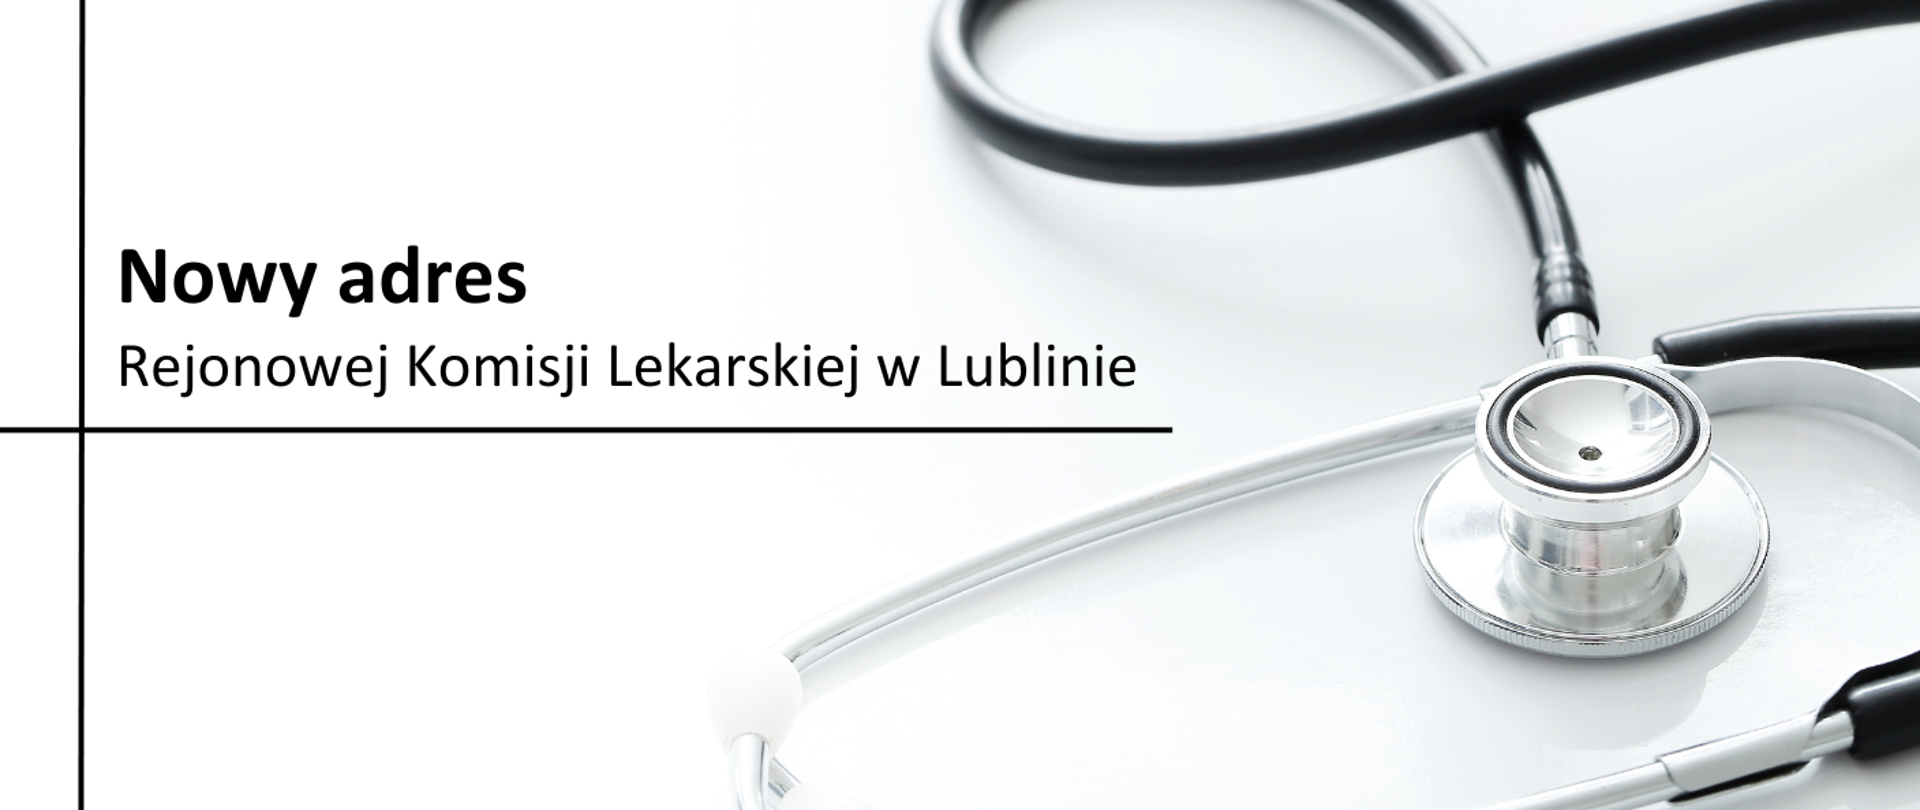 Stetoskop lekarski na białym tle z czarnym napisem "Nowy adres Rejonowej Komisji Lekarskiej w Lublinie"